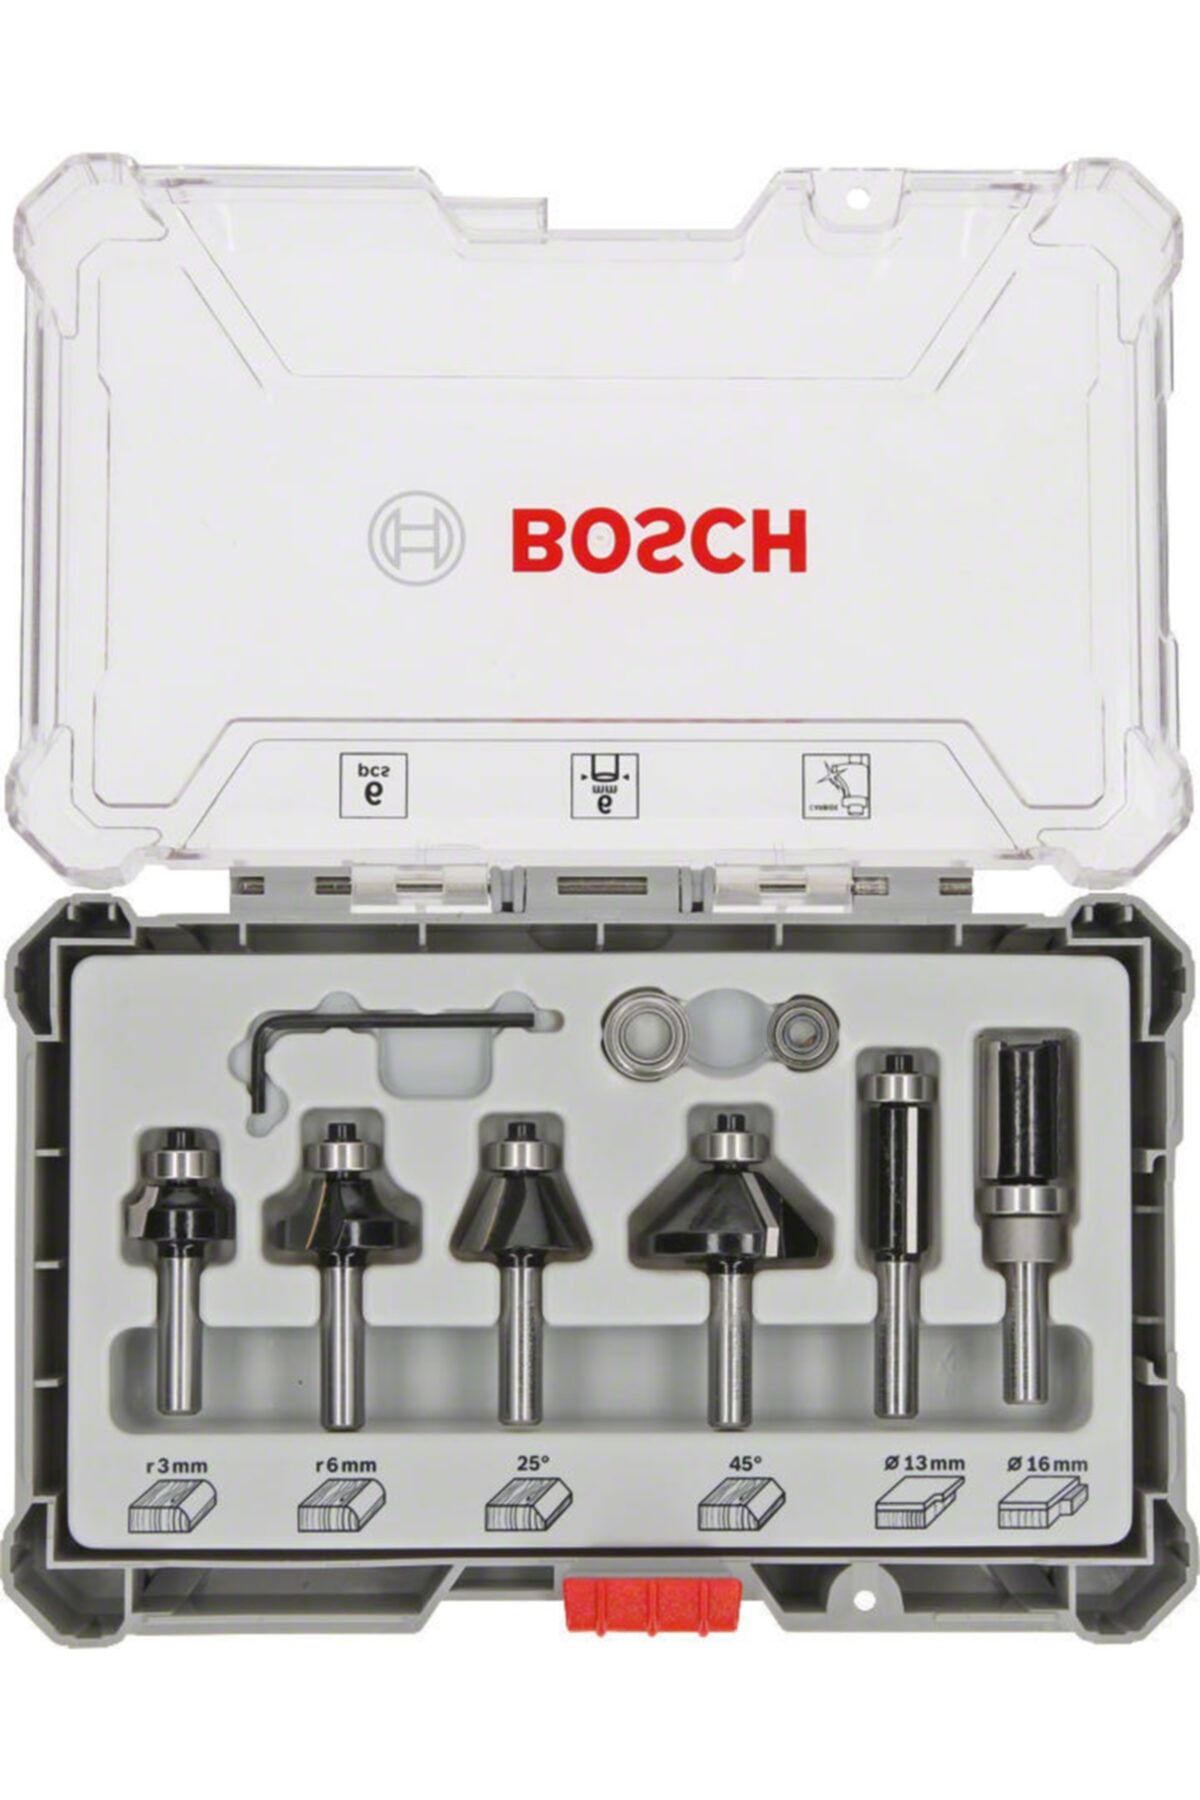 Bosch Freze Ucu Seti 6 Parça Karışık 6 Mm Şaft (pro) Biçimlendirme Ve Kenar Pahlama - 2607017468